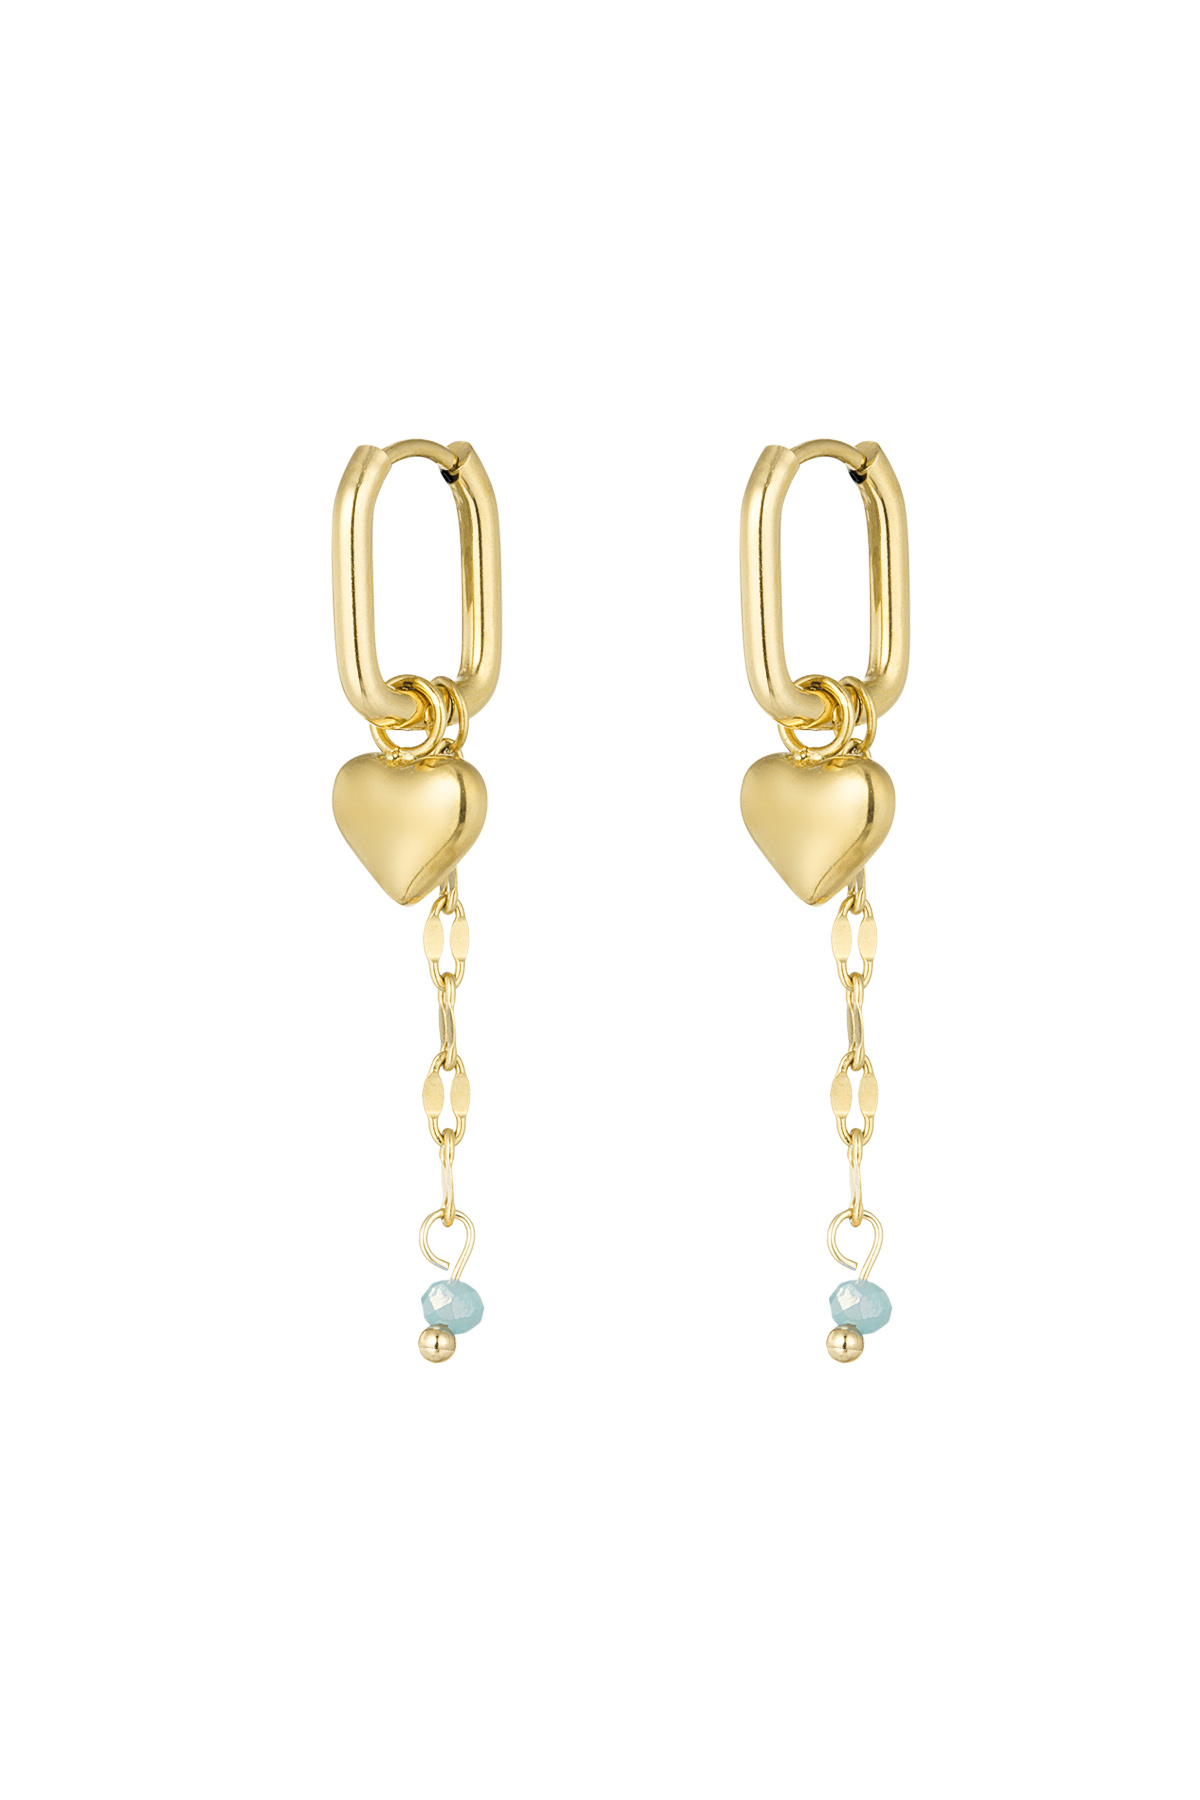 Forever love earrings - blue/gold  h5 